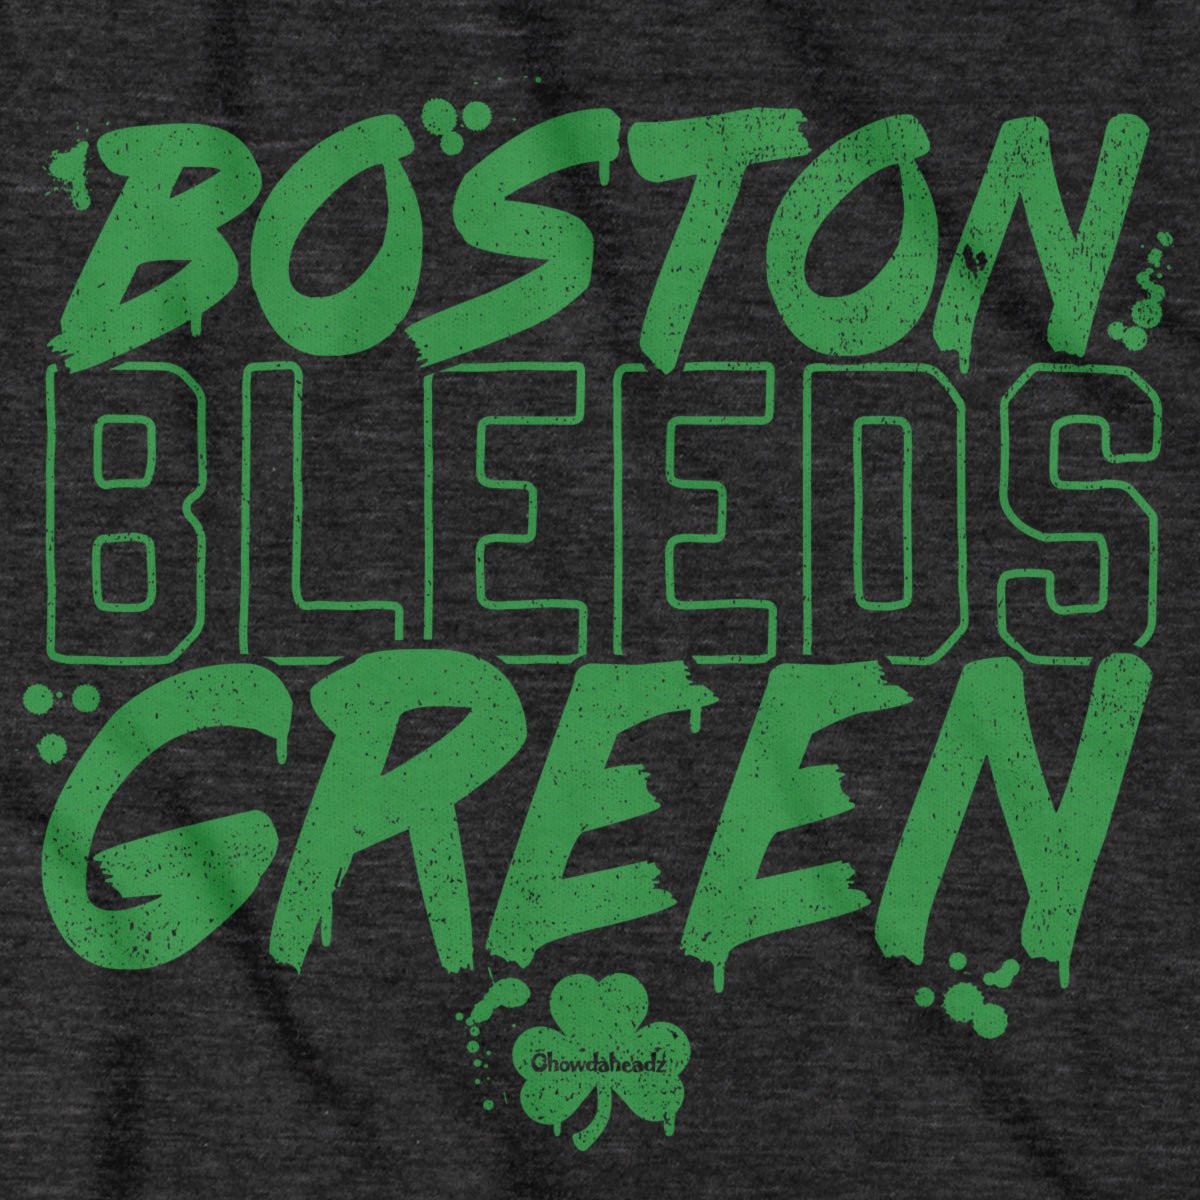 Boston Bleeds Green T-Shirt - Chowdaheadz